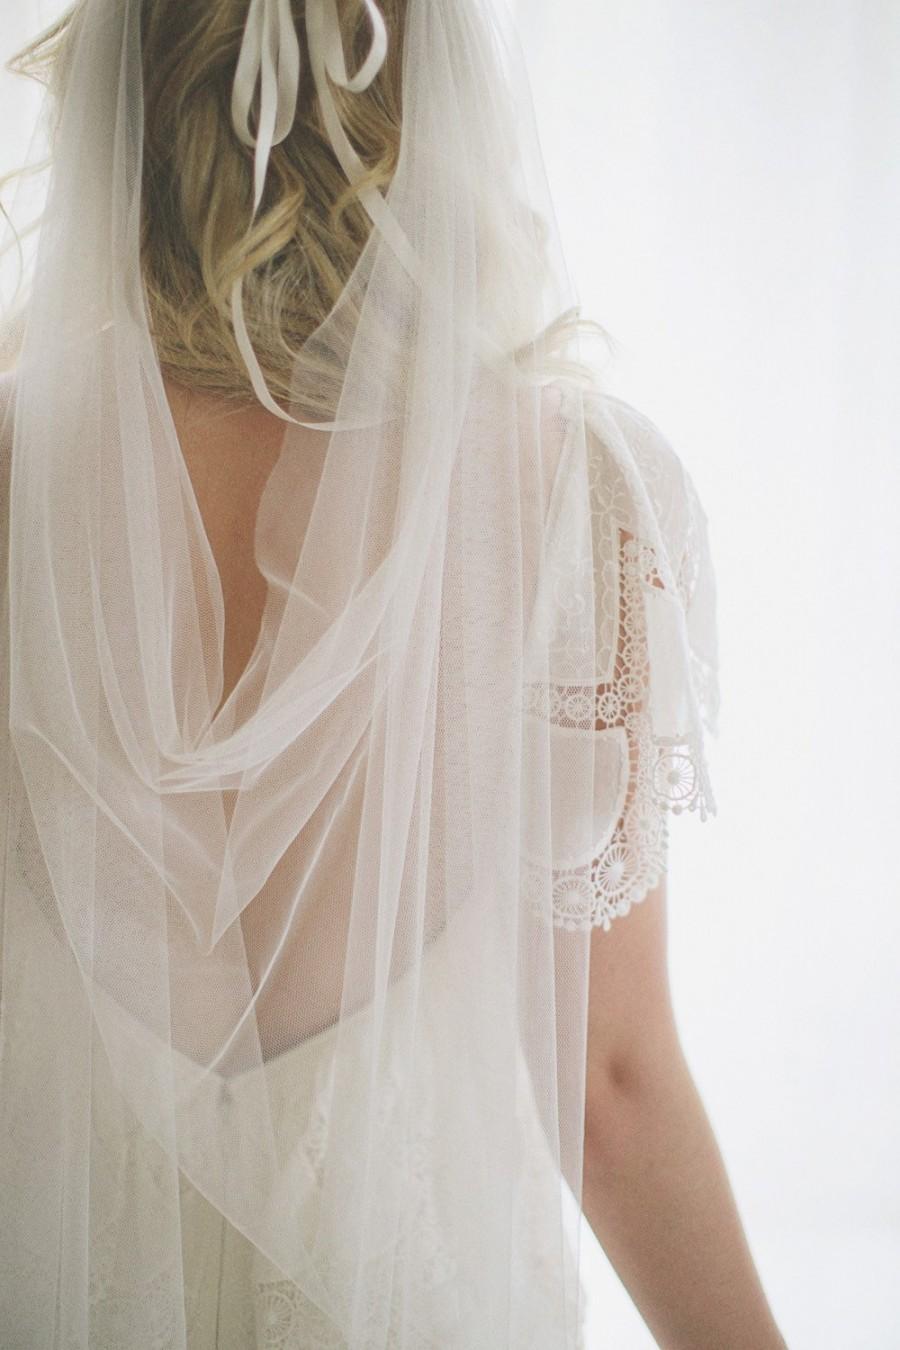 زفاف - Draped veil - SALE limited time only ! Marianna ivory veil, drape veil, tulle veil, wedding, bridal veil